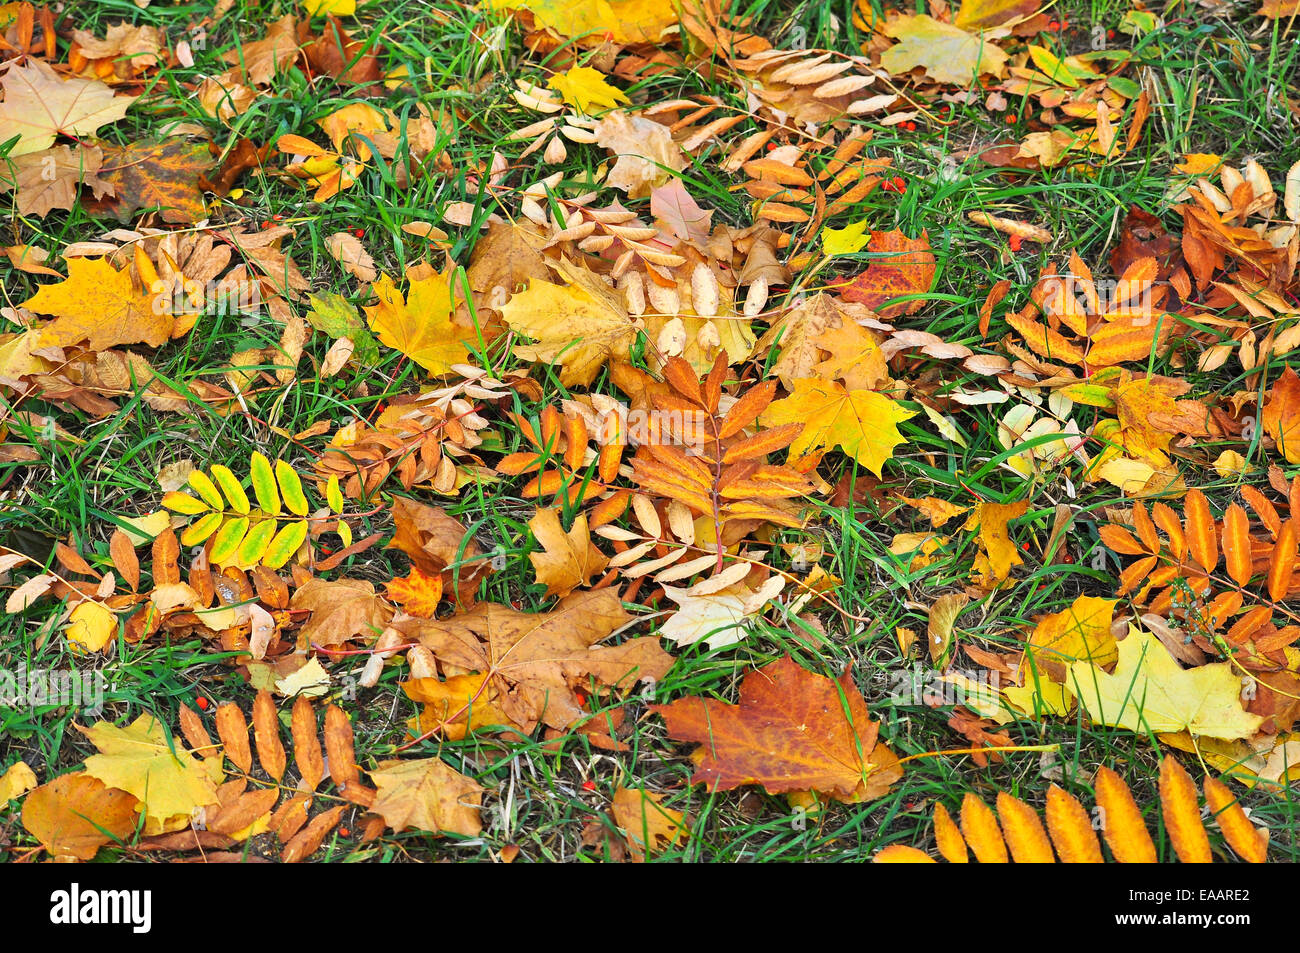 Sfondo astratto di foglie cadute. Modello incolore da materie prime vegetali. Foto Stock